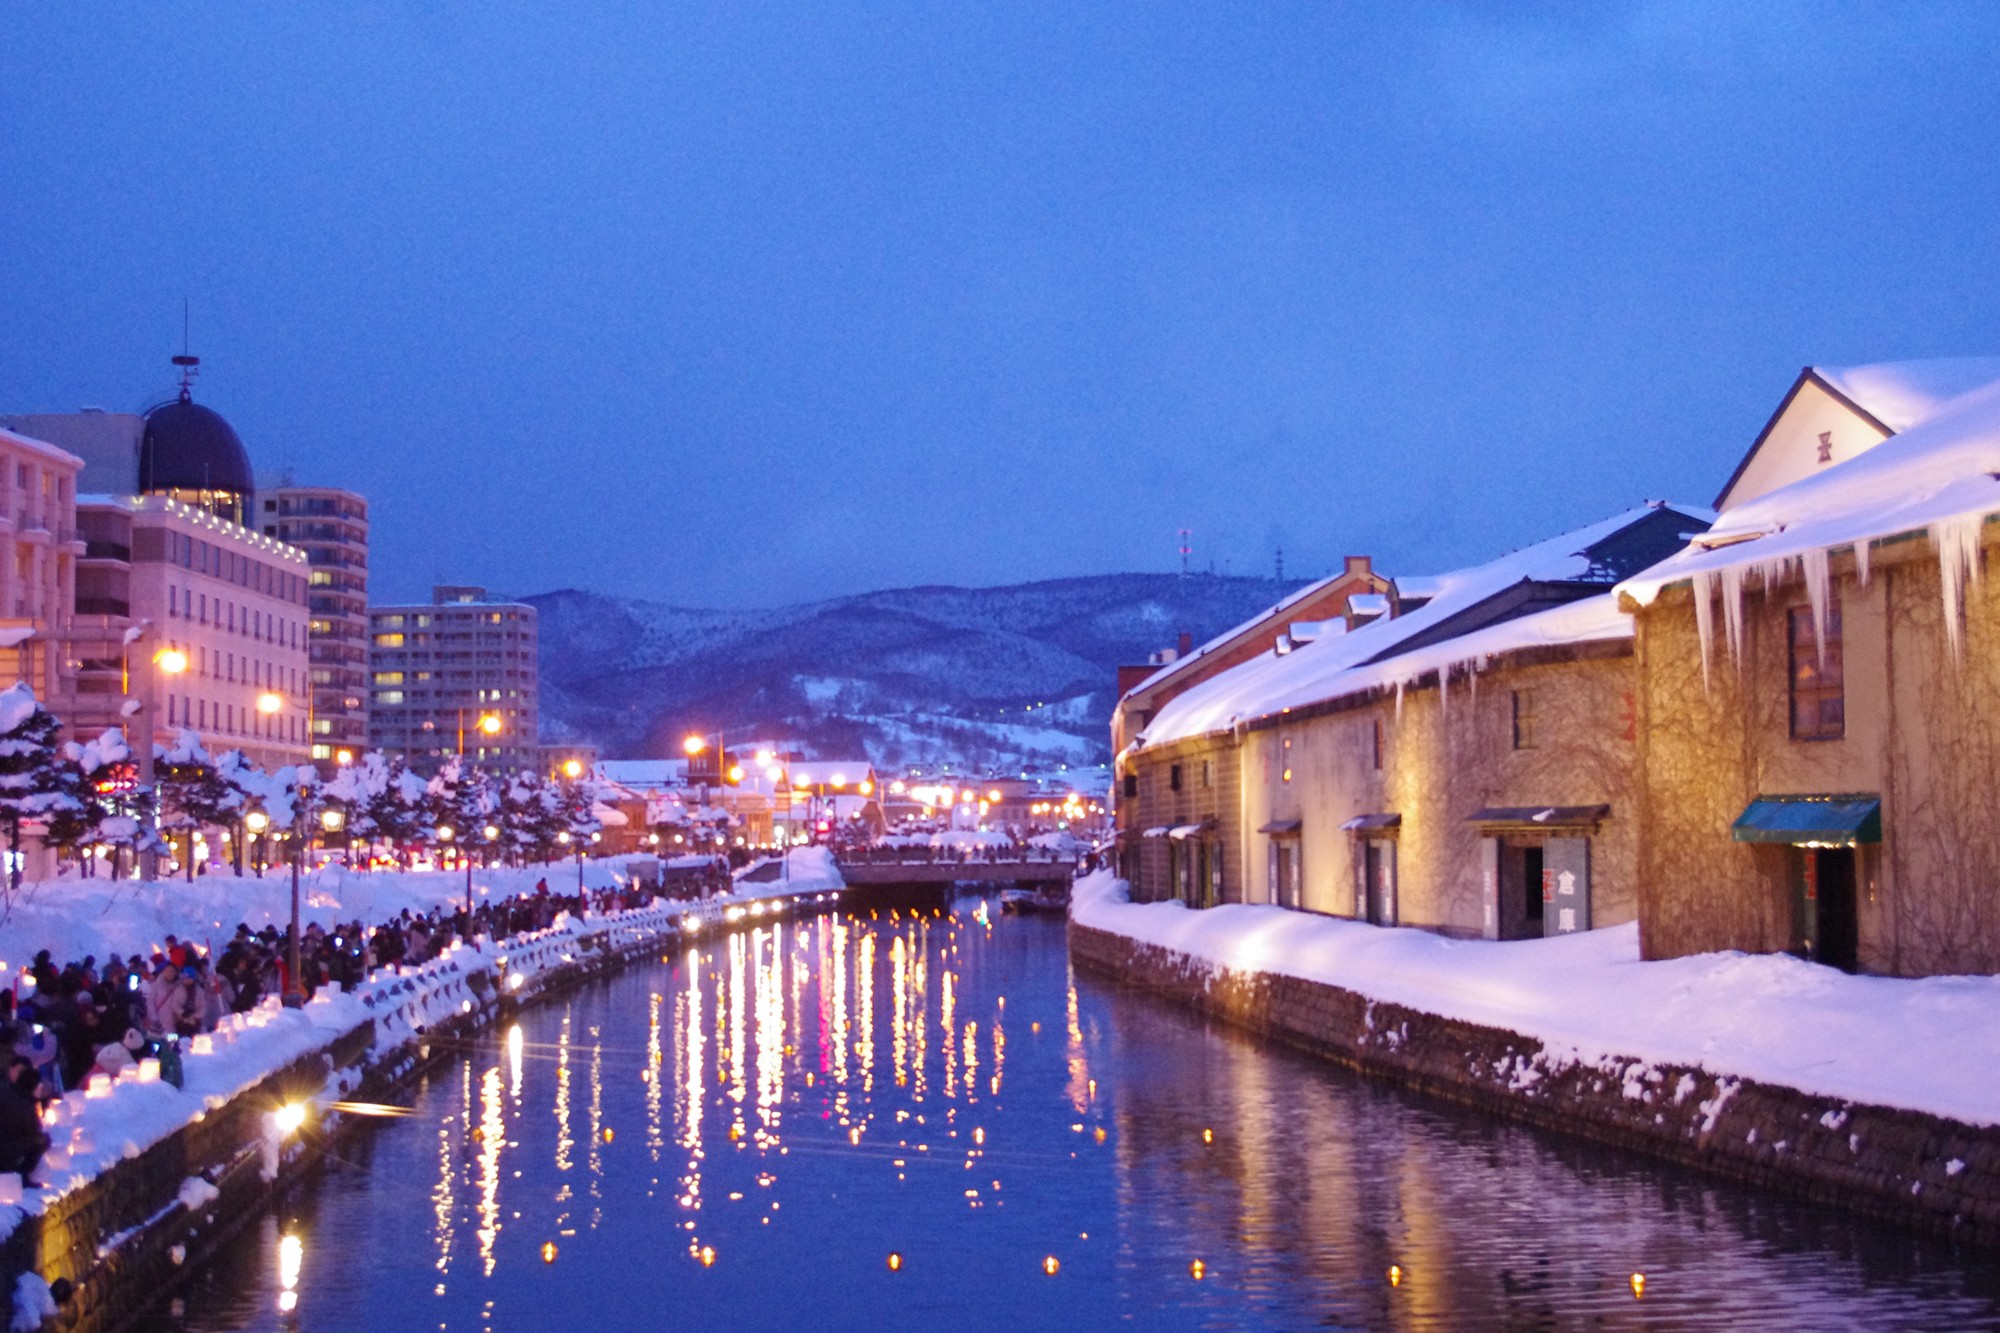 日本北海道 北海道獨有冬季風情 小樽雪燈之路